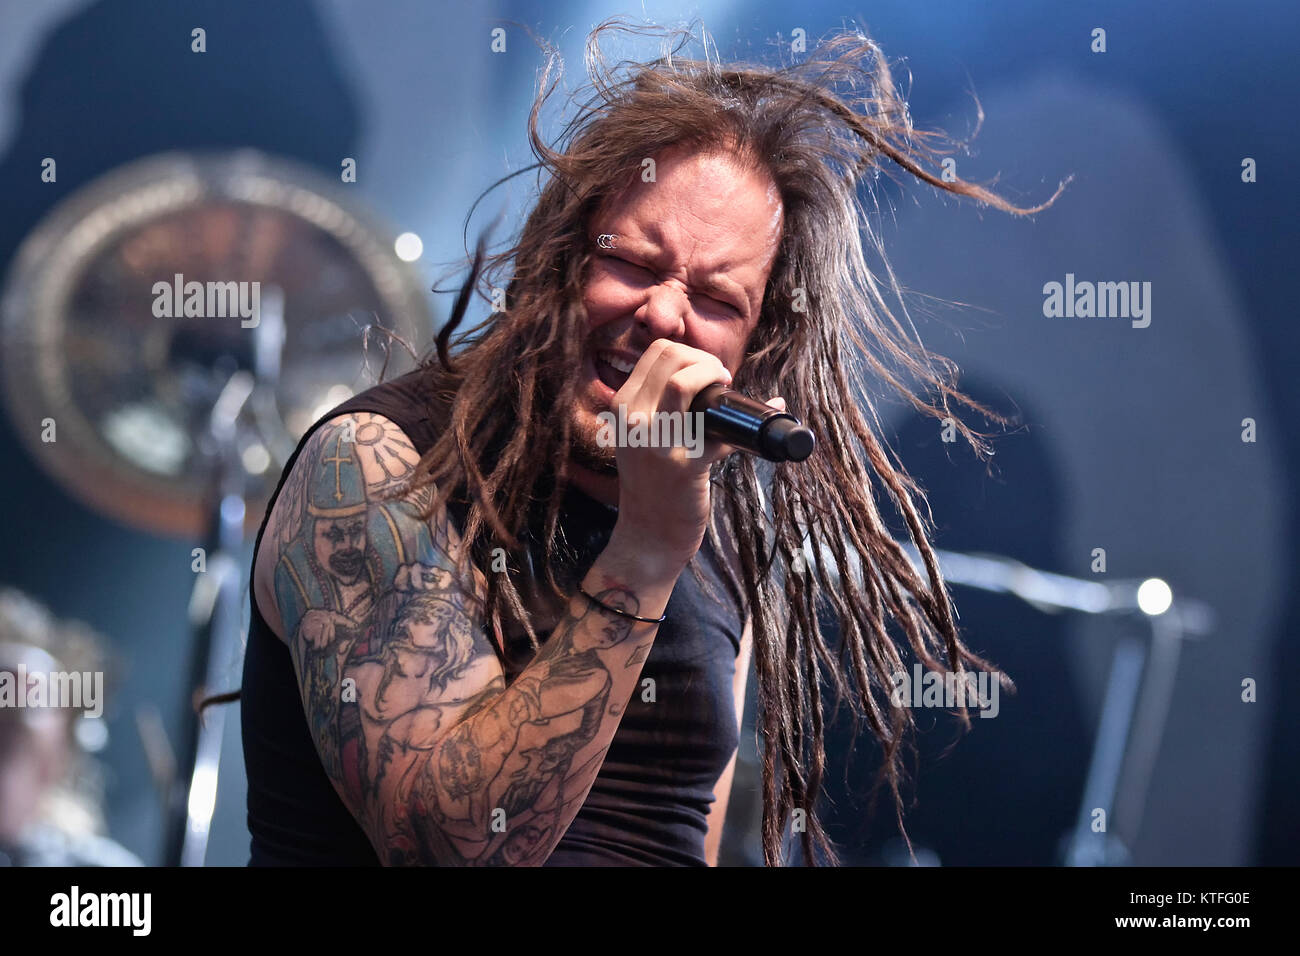 La American heavy metal band Korn (stilizzata KoЯn) esegue un concerto dal vivo a Youngstorget in Oslo. Qui cantante Jonathan Davis è visto dal vivo sul palco. Norvegia, 16/06 2011. Foto Stock